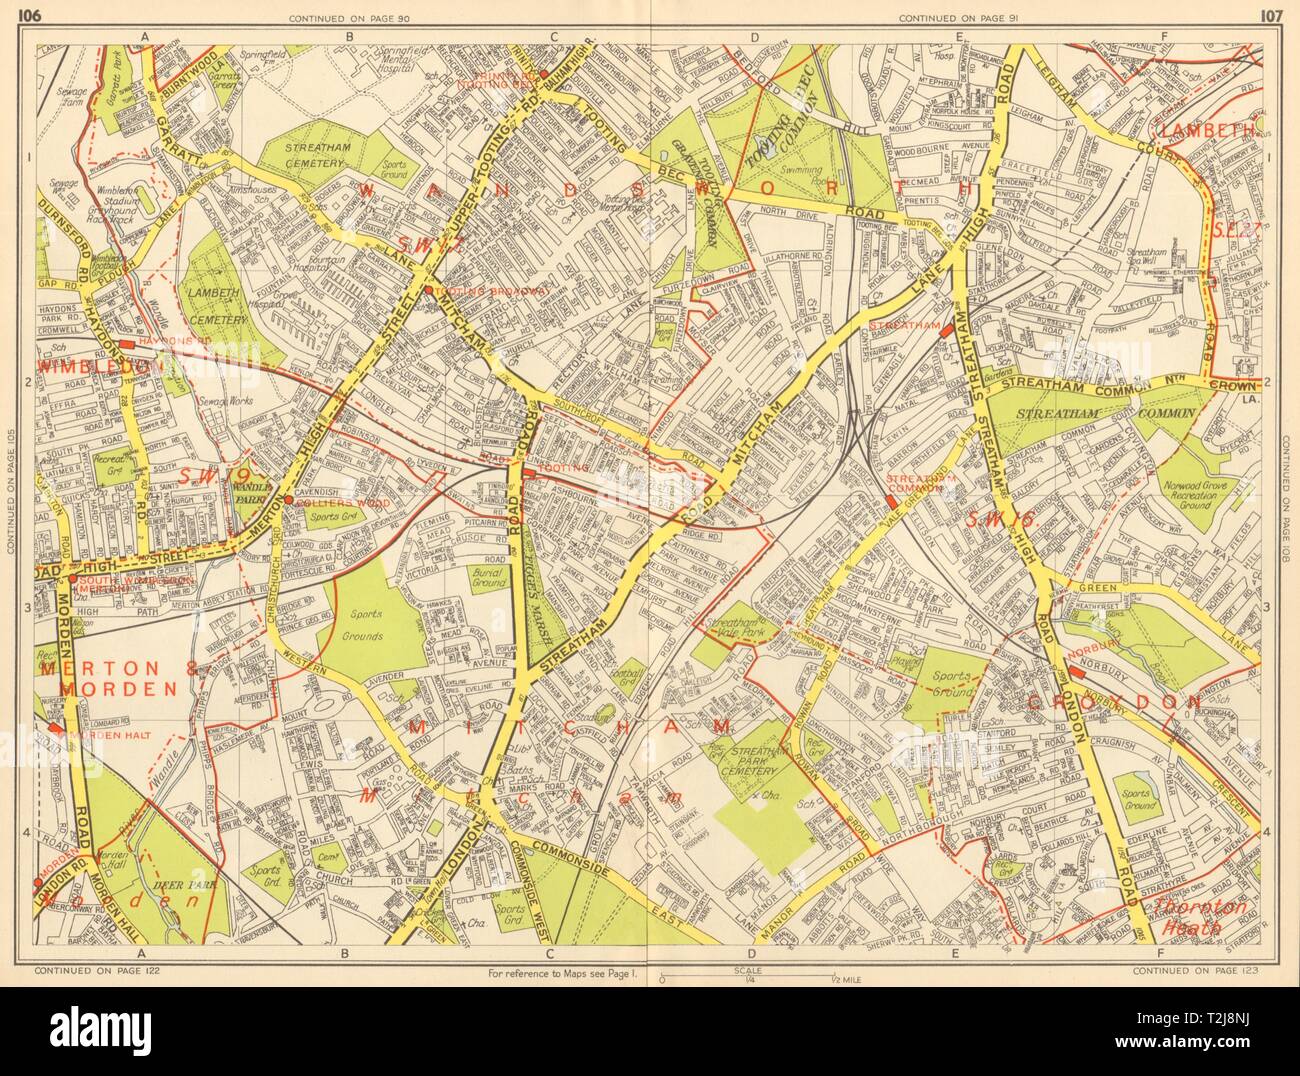 STREATHAM SW16 SW19 SW17 Mitcham Tooting Norbury. I geografi' A-Z 1948 mappa Foto Stock